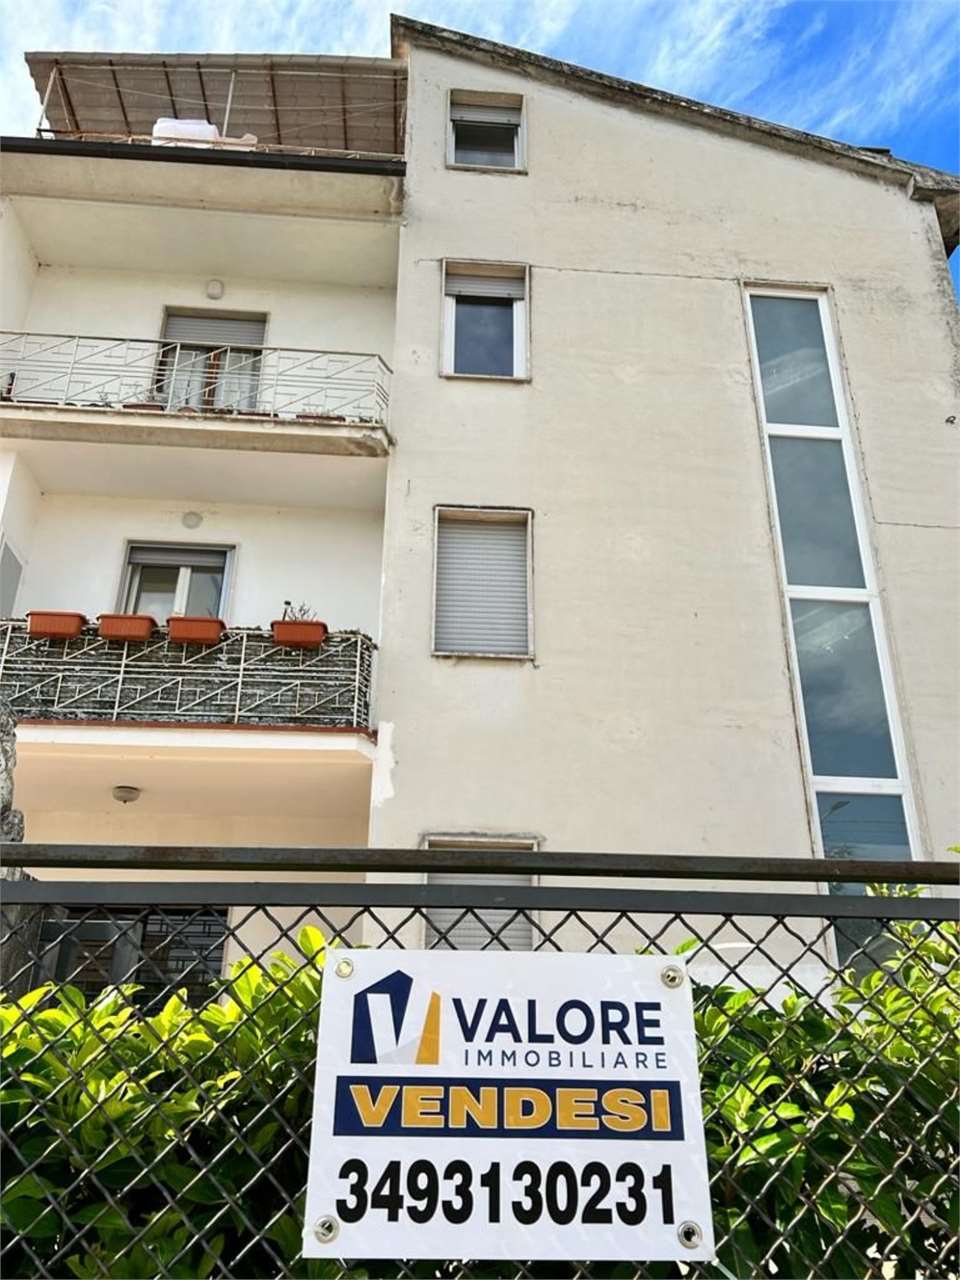 Appartamento in vendita a Perugia, 5 locali, prezzo € 190.000 | PortaleAgenzieImmobiliari.it